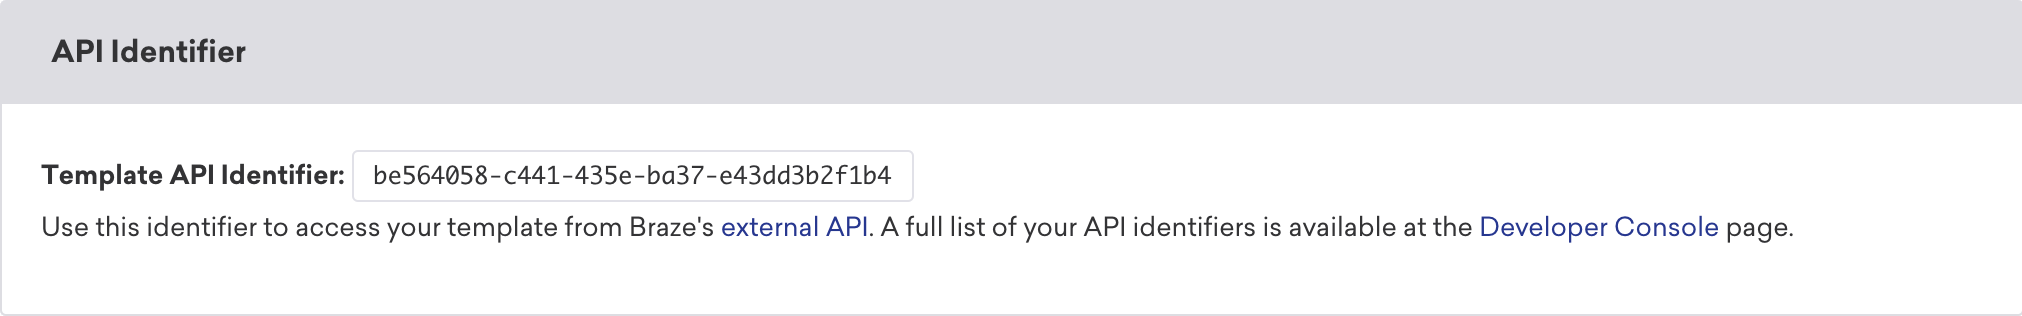 メールテンプレートの下部にある API 識別子